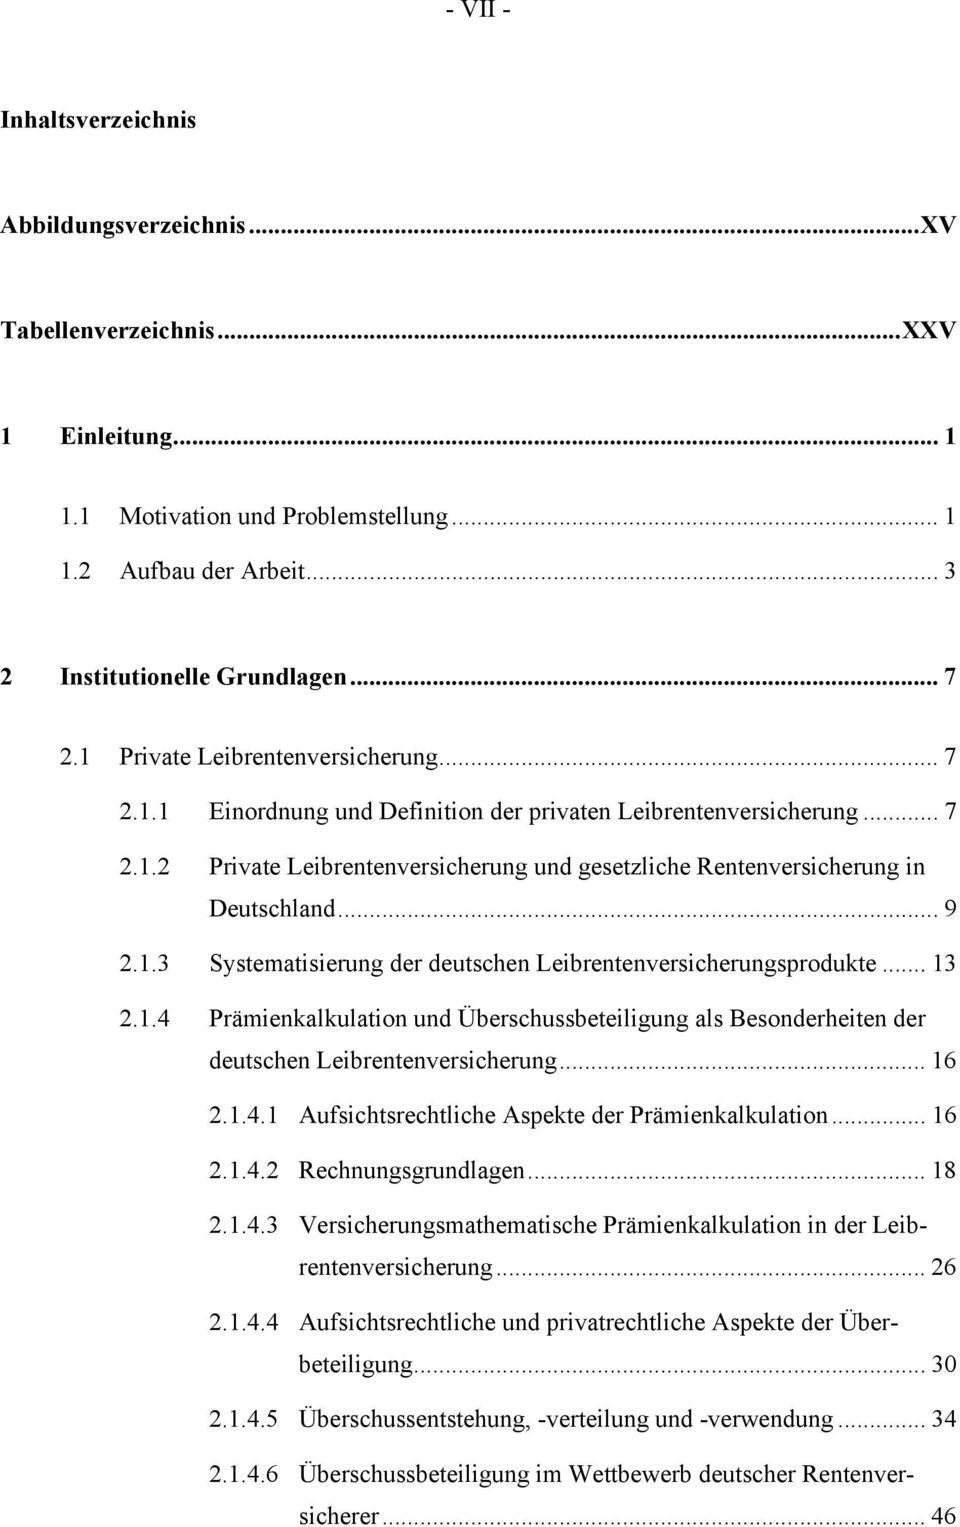 .. 9 2.1.3 Systematisierung der deutschen Leibrentenversicherungsprodukte... 13 2.1.4 Prämienkalkulation und Überschussbeteiligung als Besonderheiten der deutschen Leibrentenversicherung... 16 2.1.4.1 Aufsichtsrechtliche Aspekte der Prämienkalkulation.